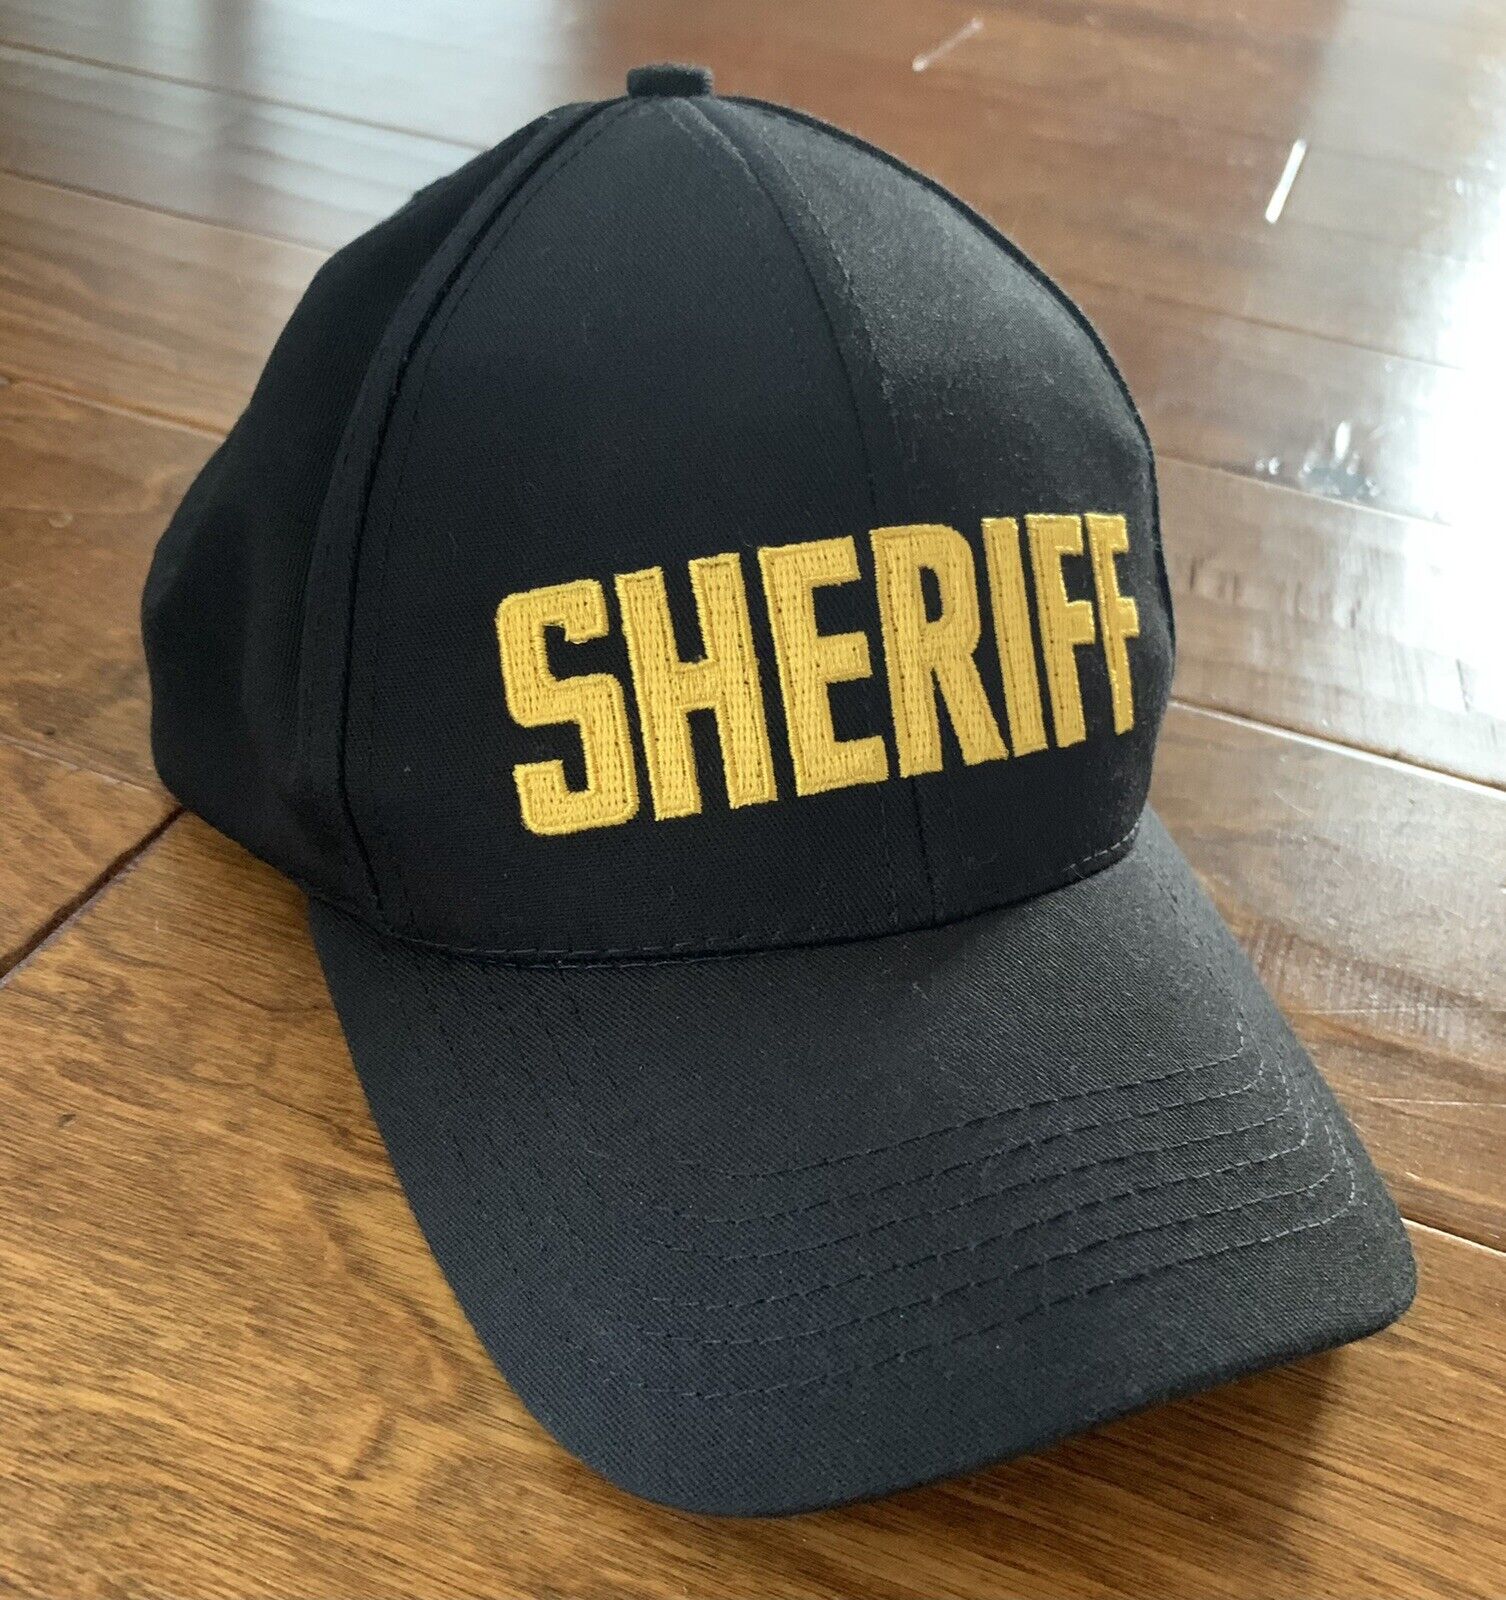 Tactical Tailor Gold Sheriff Law Enforcement Black Adjustable Hat Cap